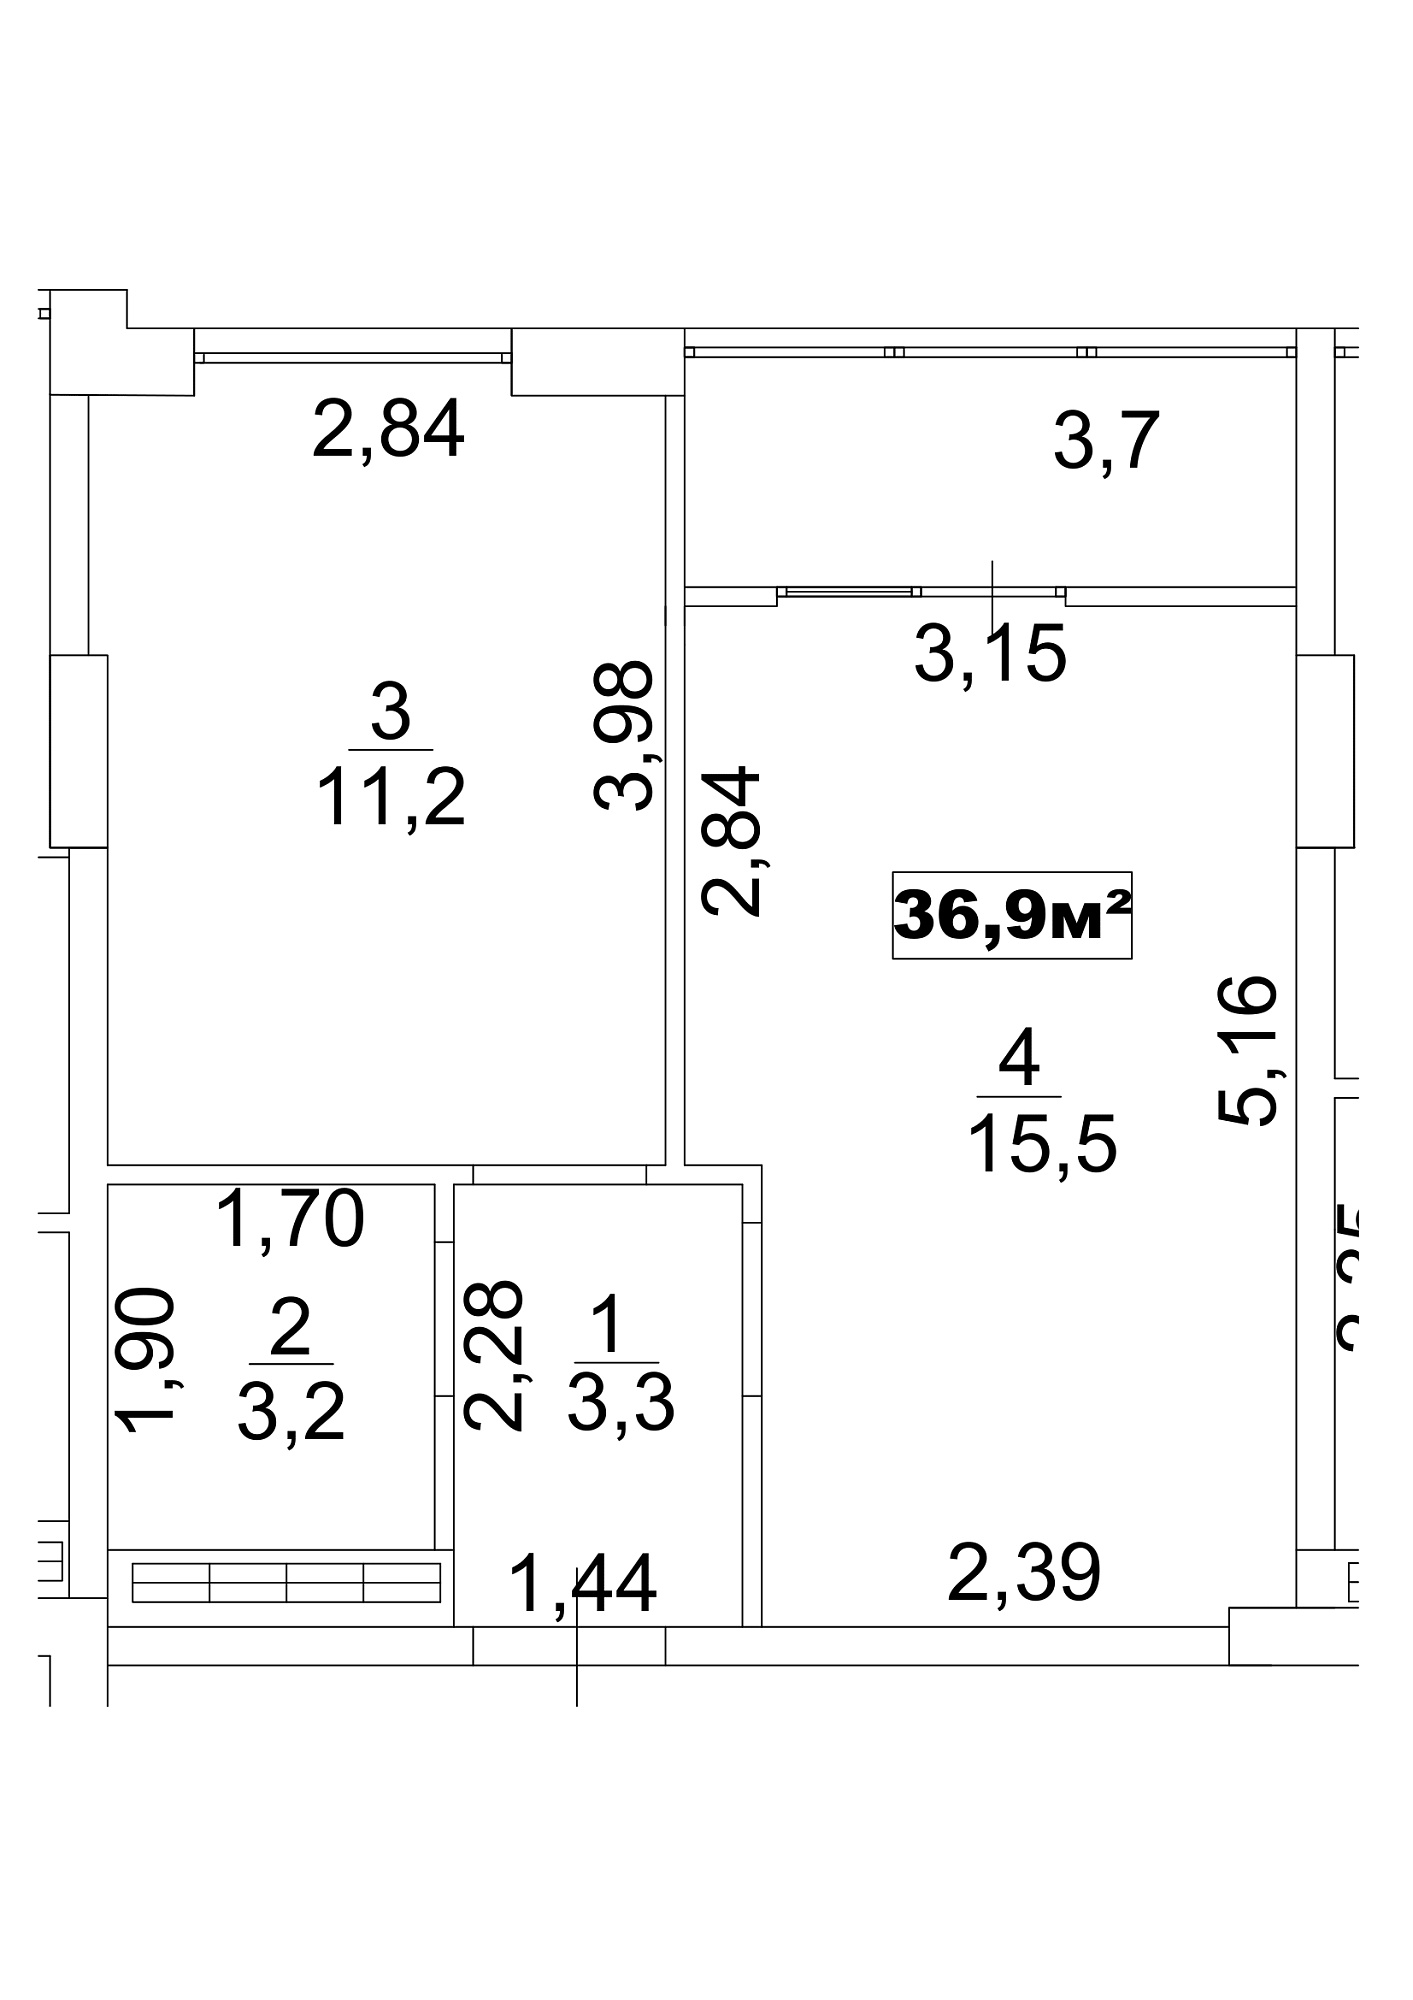 Планировка 1-к квартира площей 36.9м2, AB-13-02/00012.